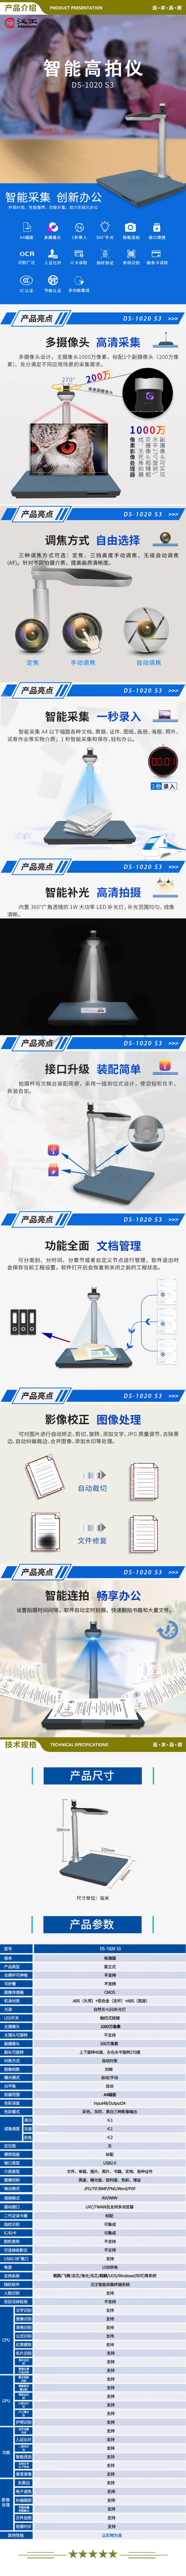 汉王 Hanvon DS-1020 S3 国产智能高拍仪扫描仪1000万高清像素A4幅面双摄像头 硬质底座 2.jpg